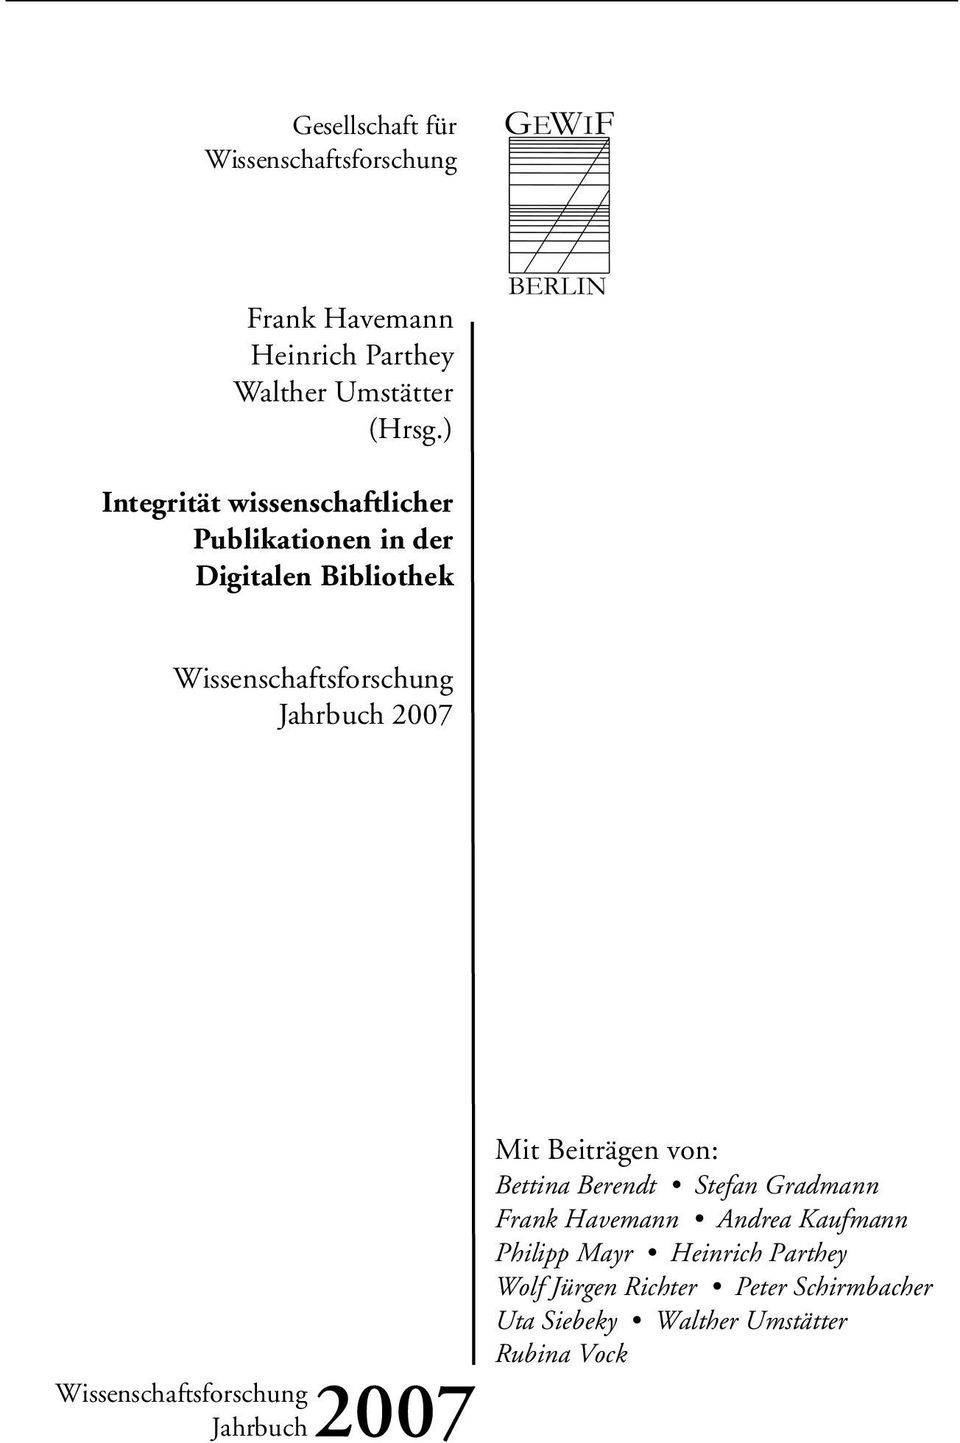 2007 Wissenschaftsforschung Jahrbuch2007 Mit Beiträgen von: Bettina Berendt Stefan Gradmann Frank Havemann